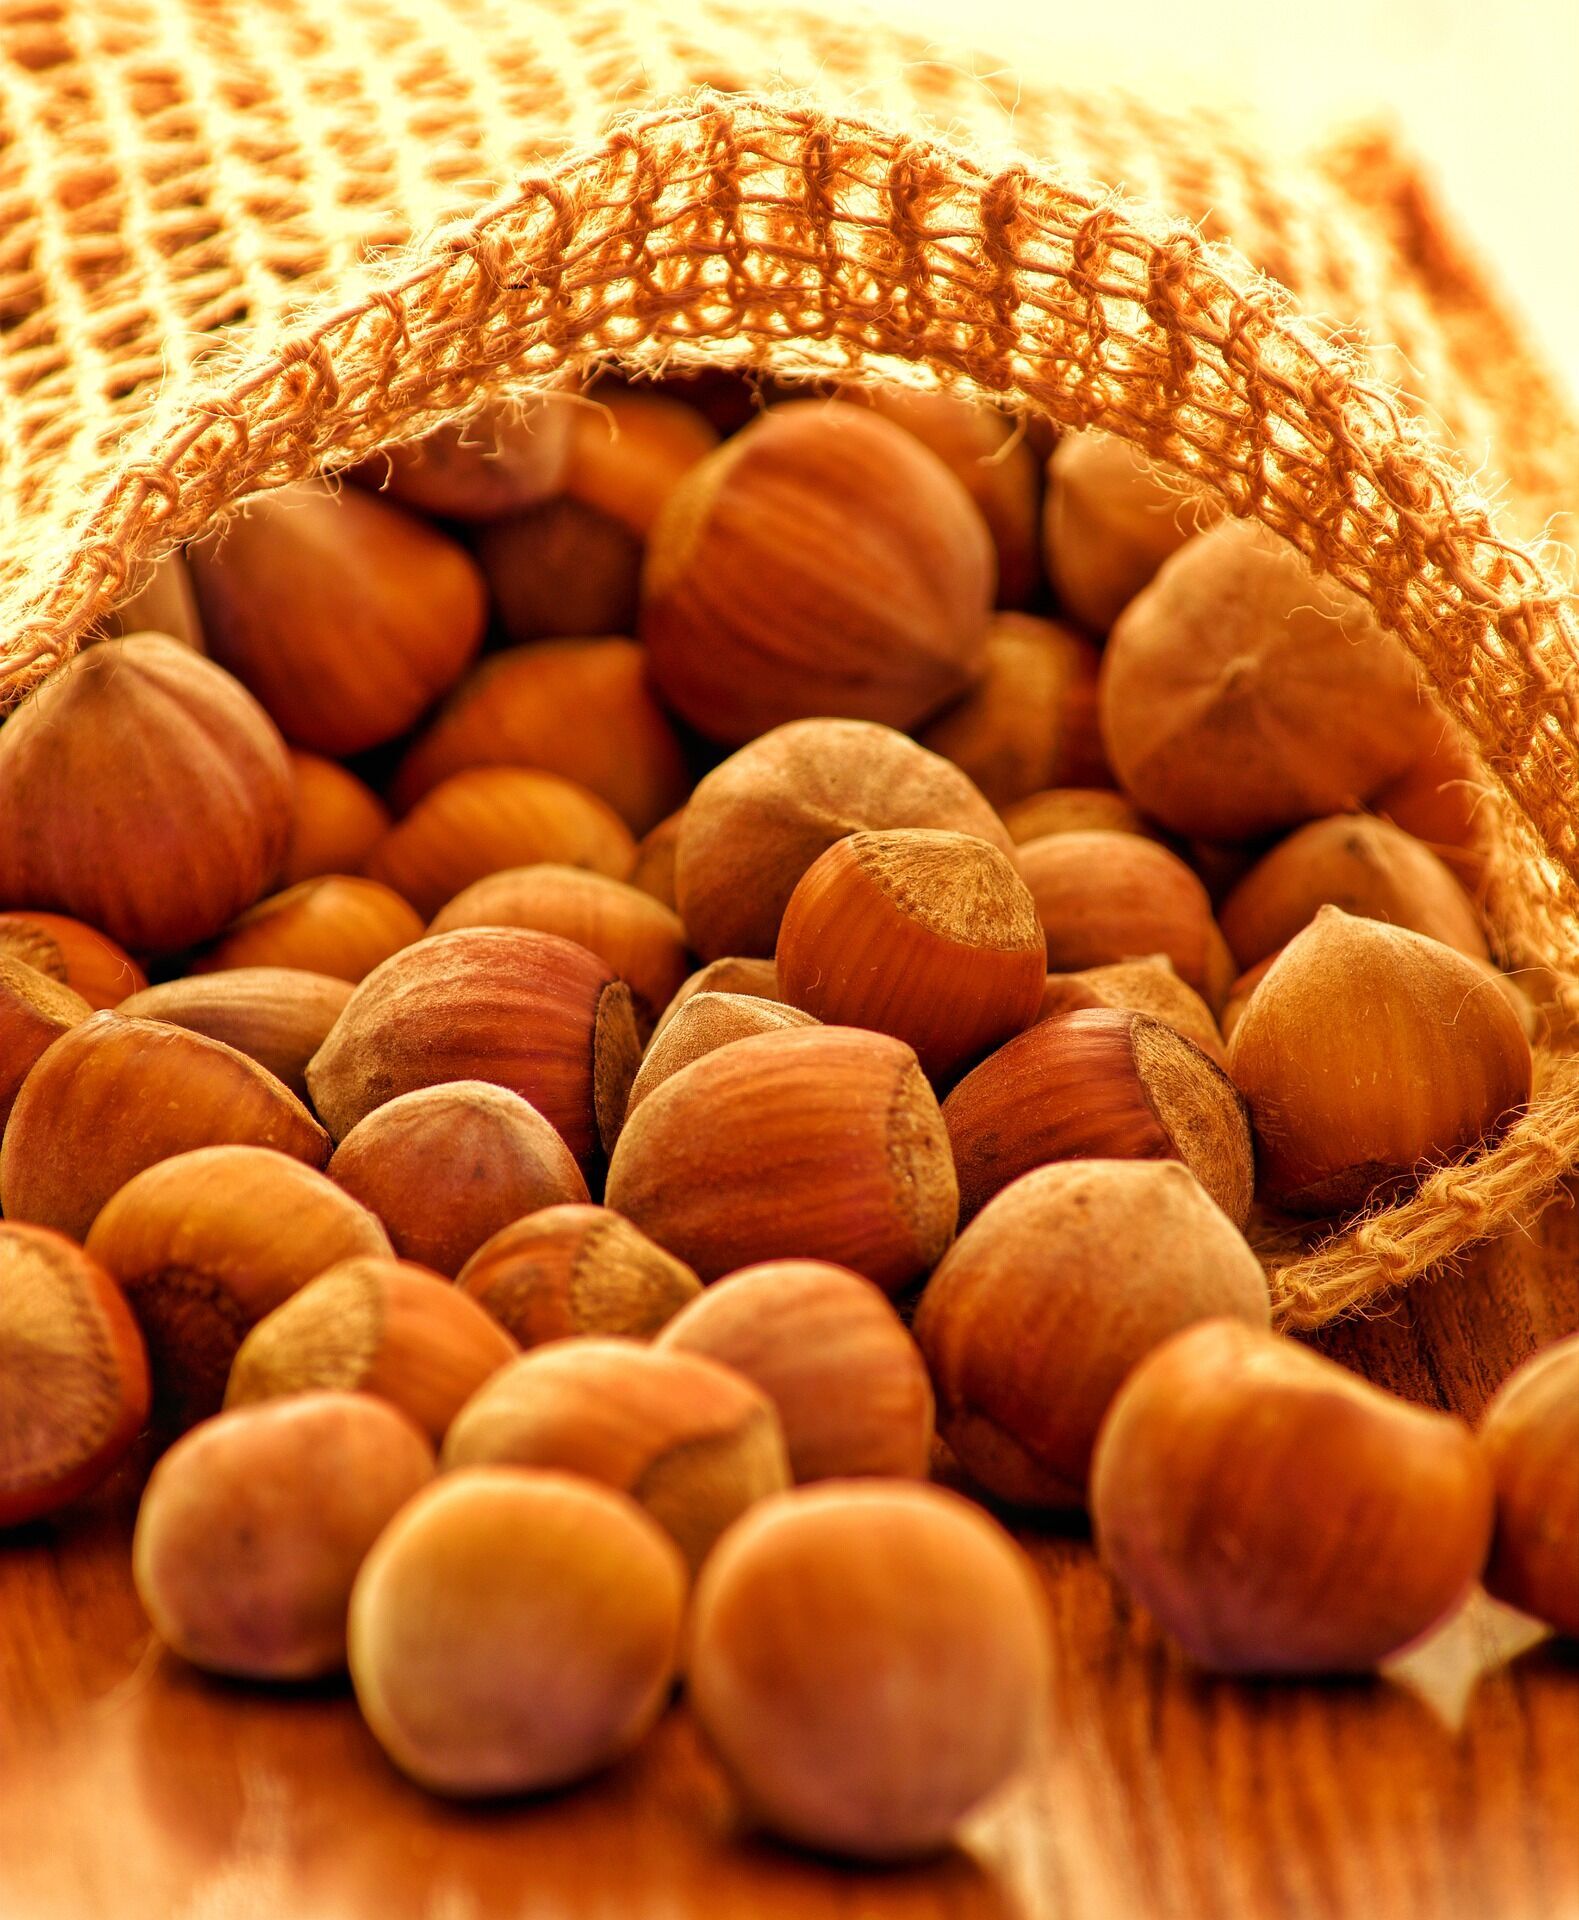 Ореховый Спас традиционно отмечается 29 августа